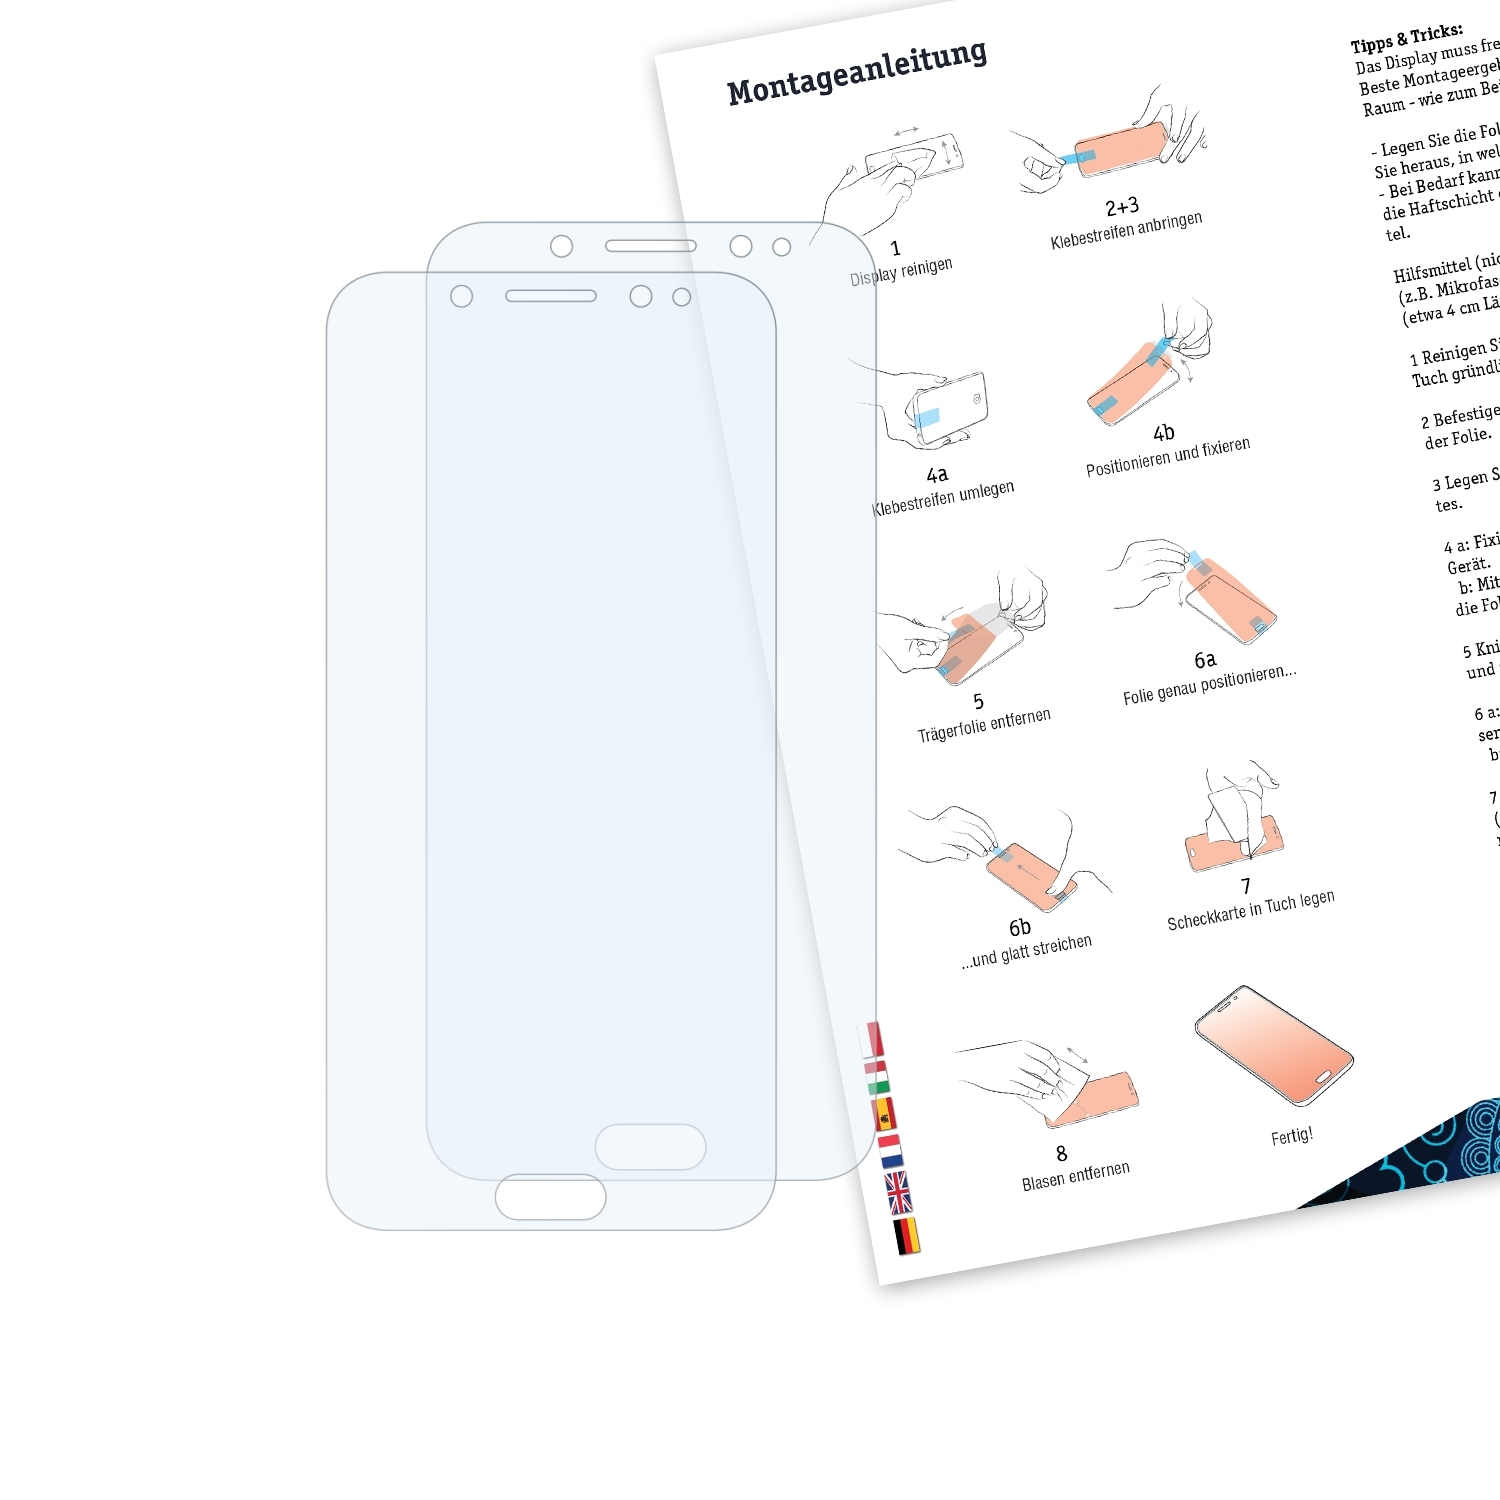 BRUNI 2x Basics-Clear Schutzfolie(für Samsung C8 Galaxy (SM-C7100))